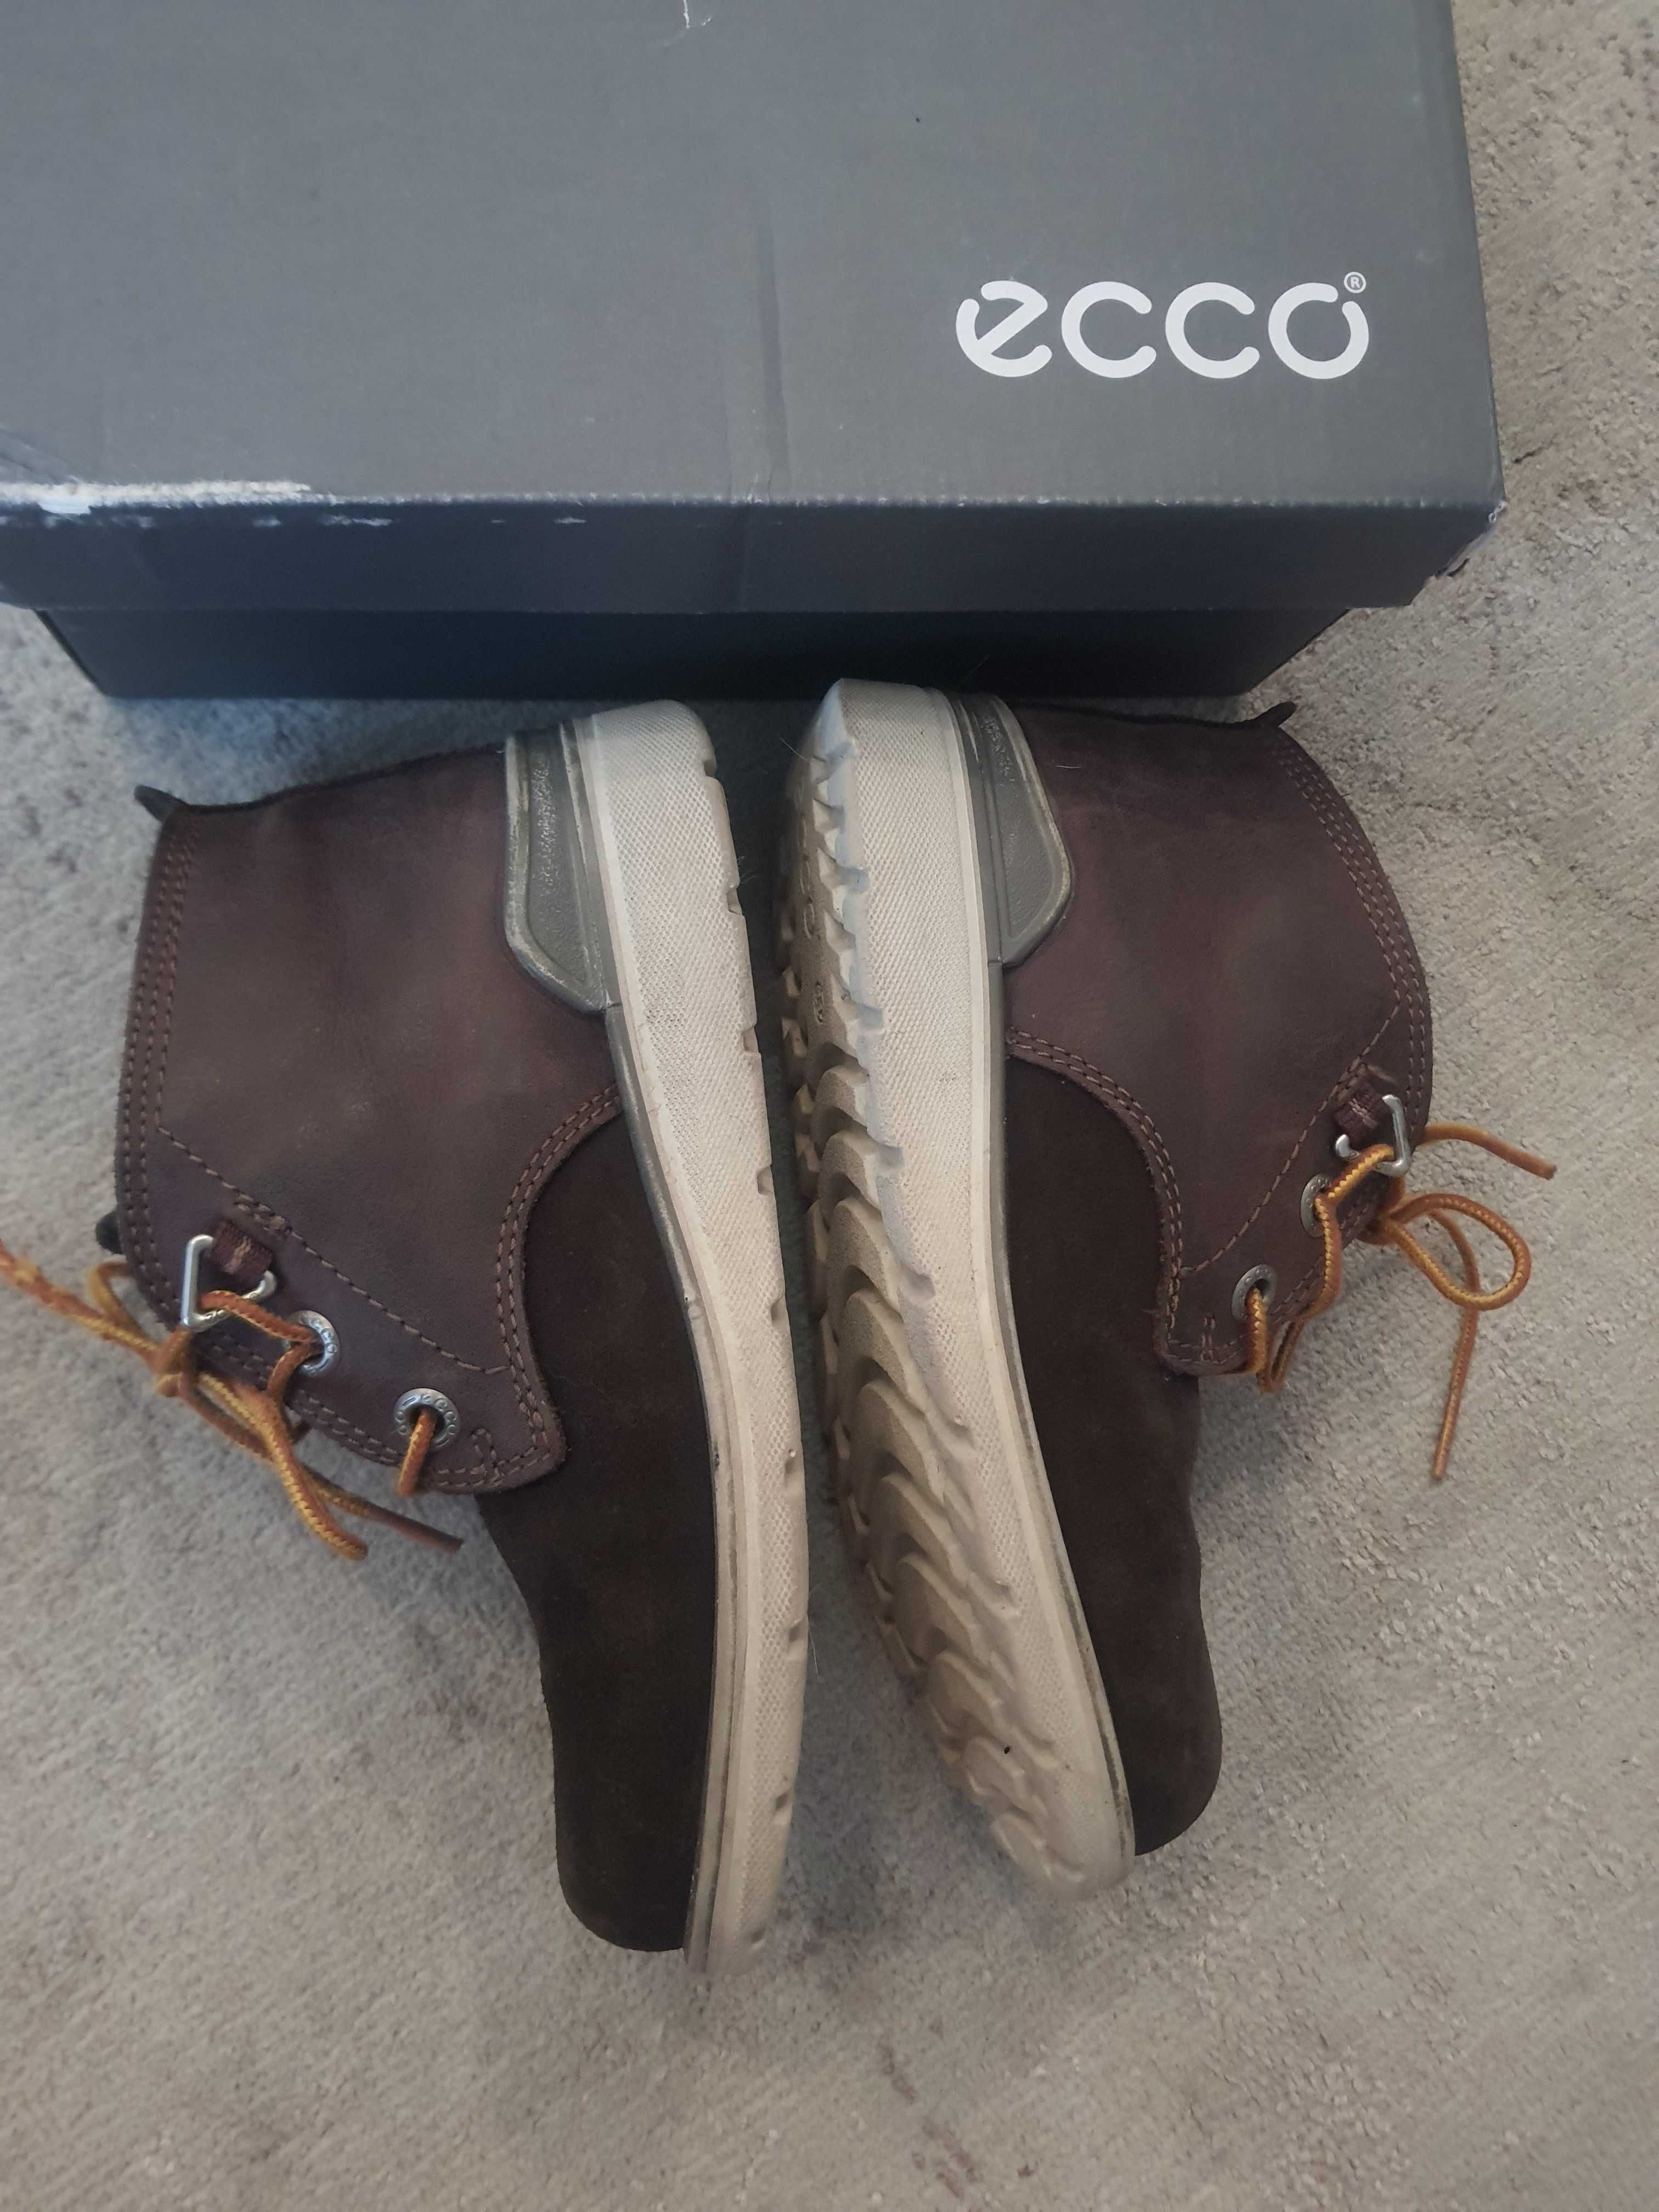 Ботинки, черевики, сопажки ECCO, оригинал, 33 р Ціна знижена!.